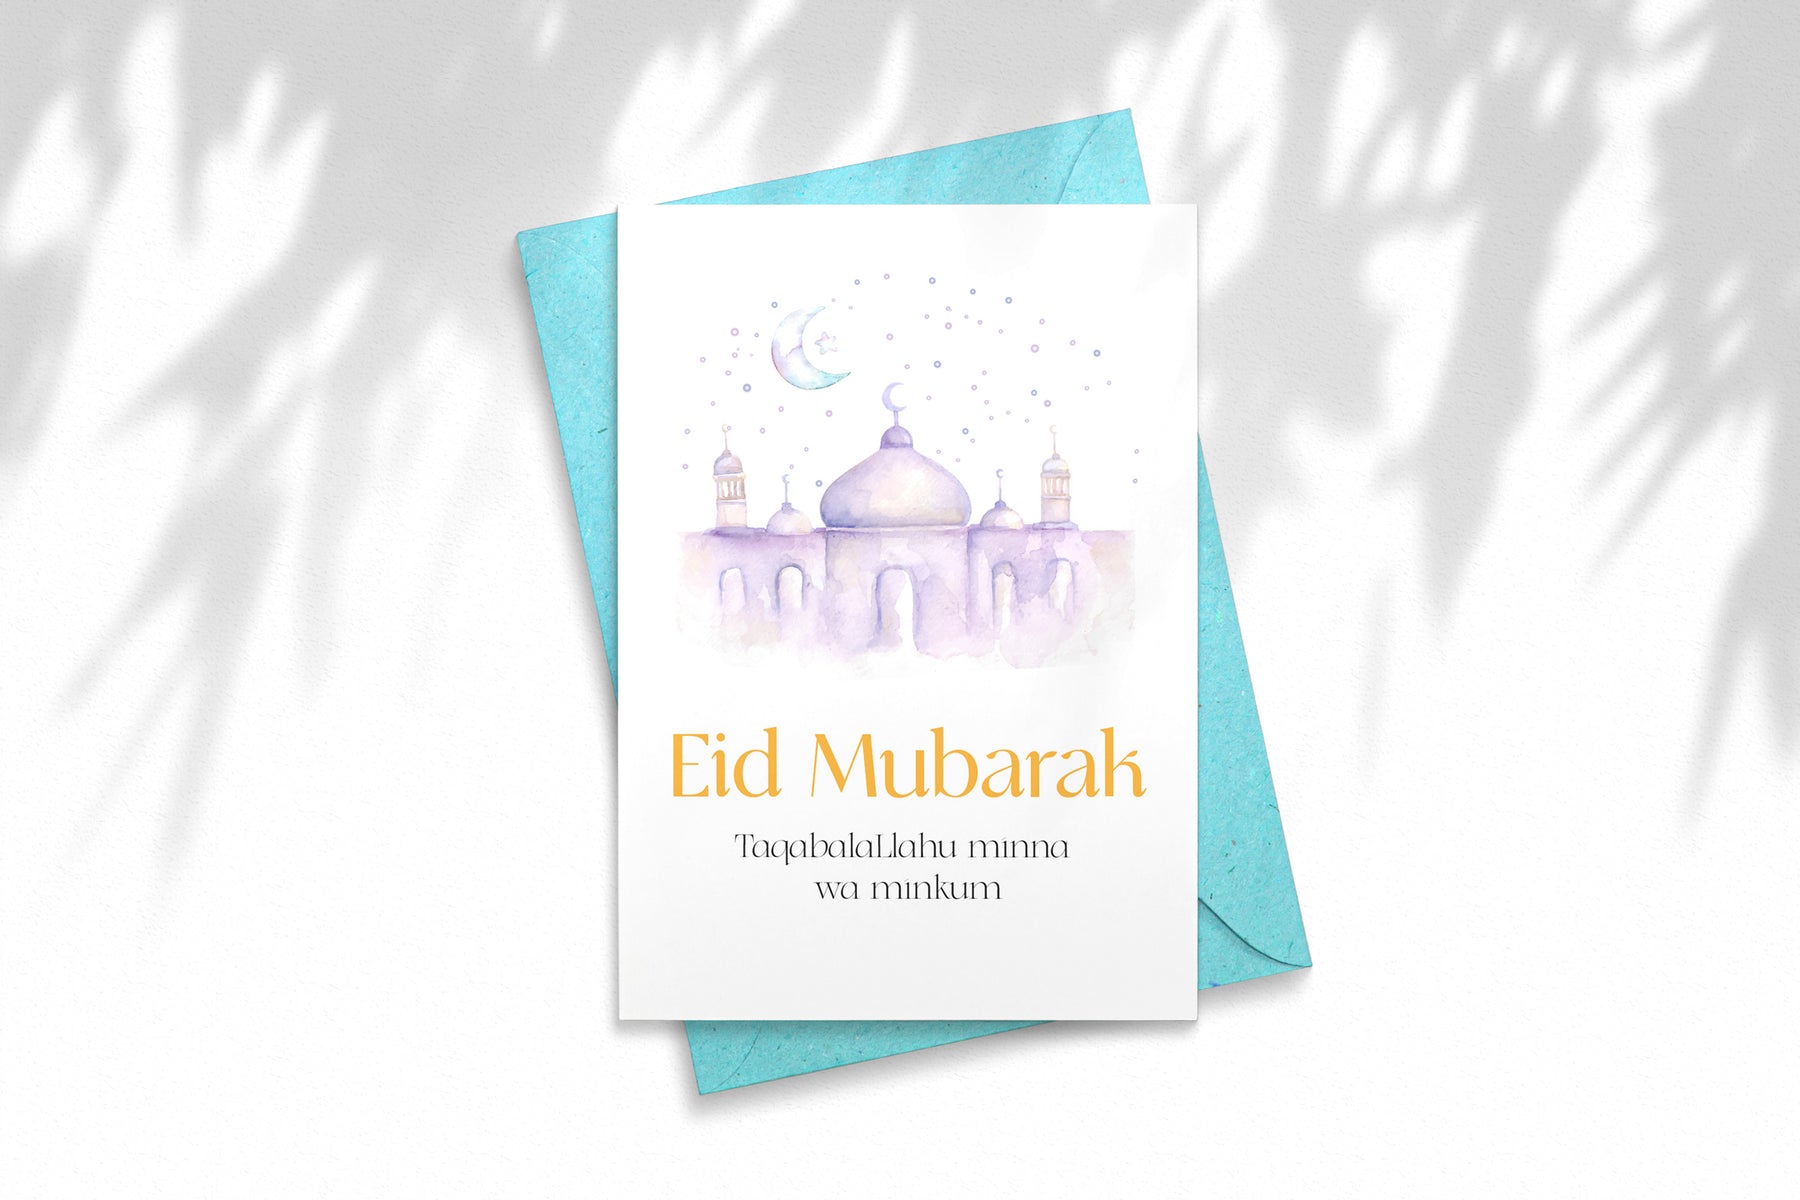 Eid Mubarak Greetings Card - Taqaballahu Minna wa Minkum